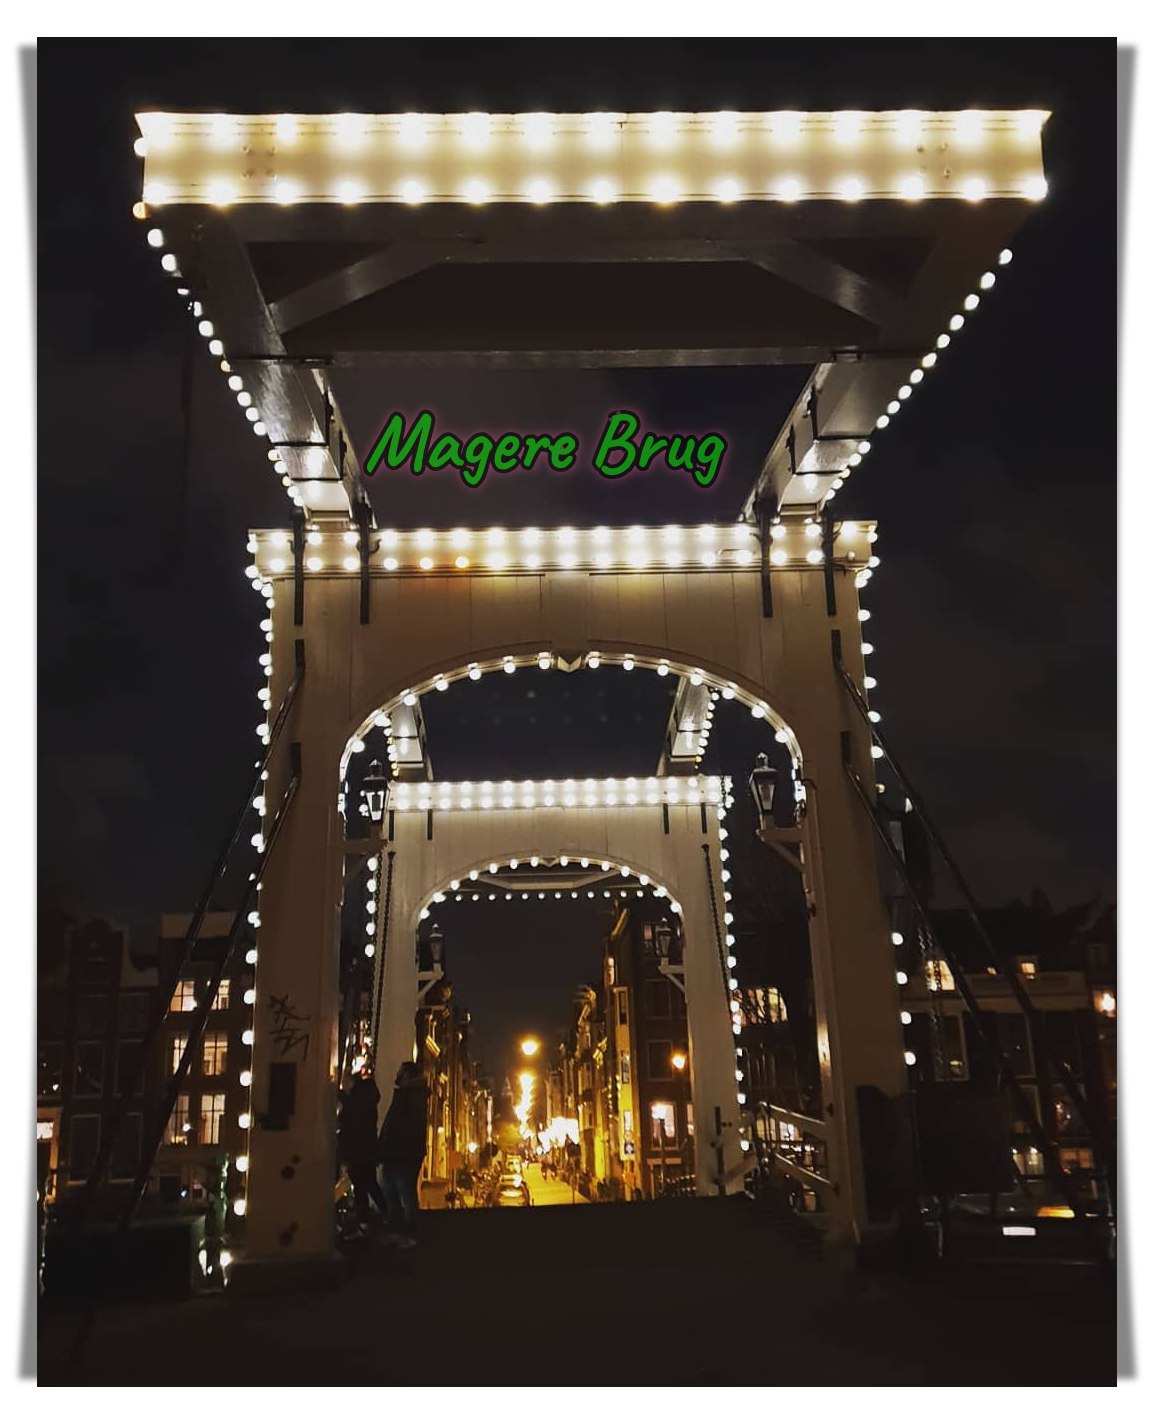 Magerebrug in de avond. Lampu-lampu Amsterdam. Jembatan Kayu Magere Brus, Skinny Bridge, Wisata Jalur Utara, Belanda, Serbalanda Tour